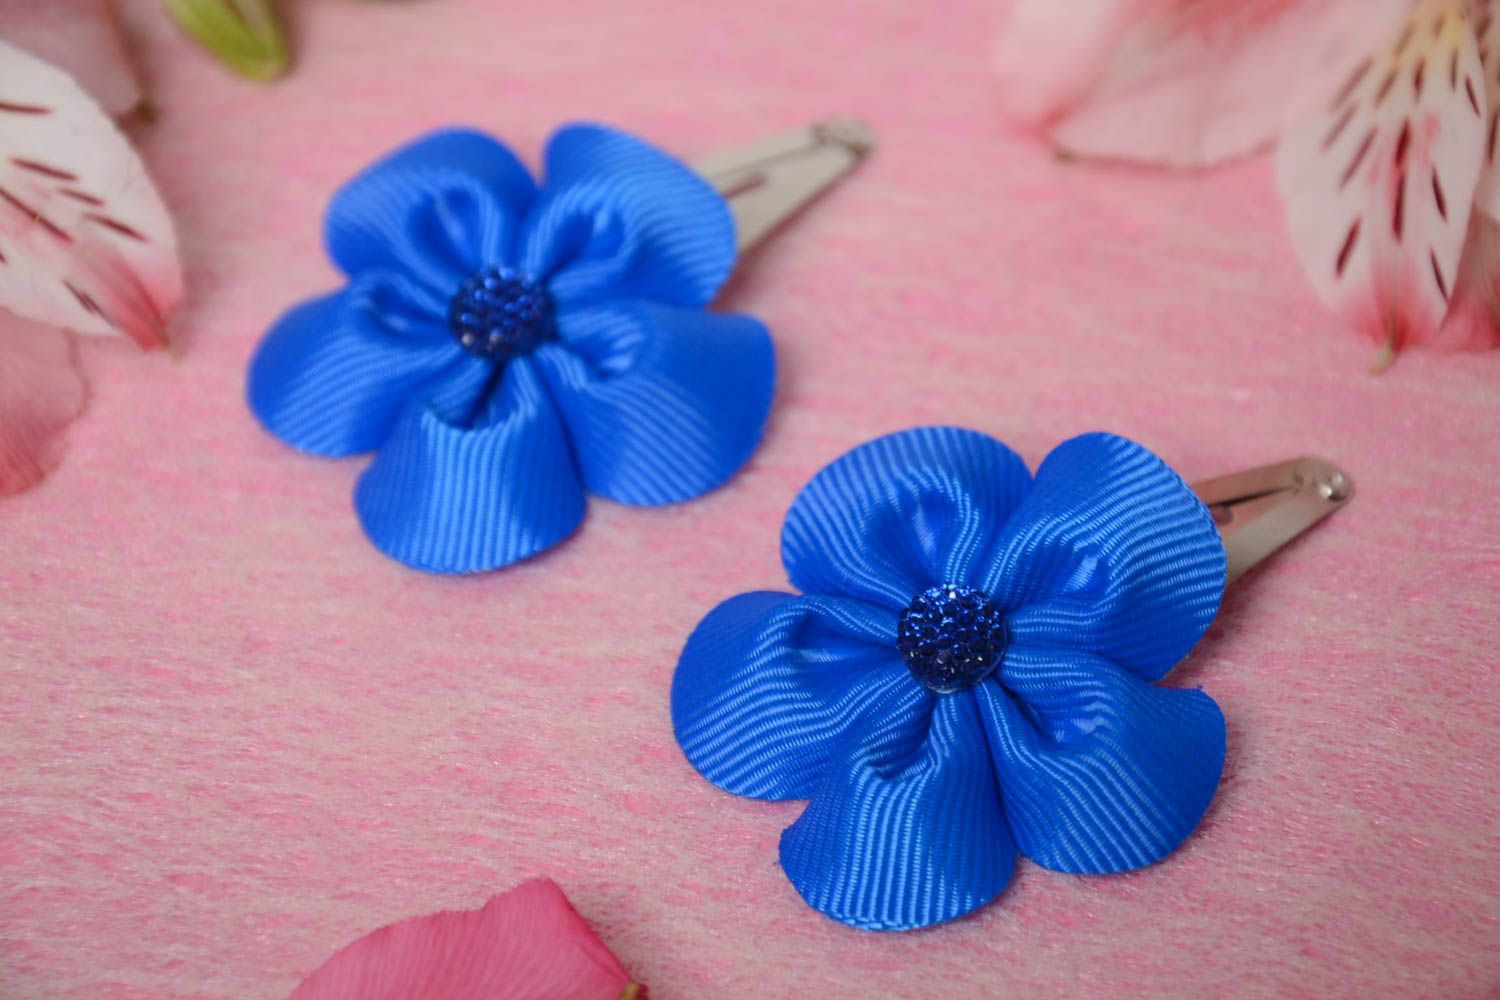 Заколки для волос из репсовых лент набор 2 штуки ручной работы синие красивые фото 1